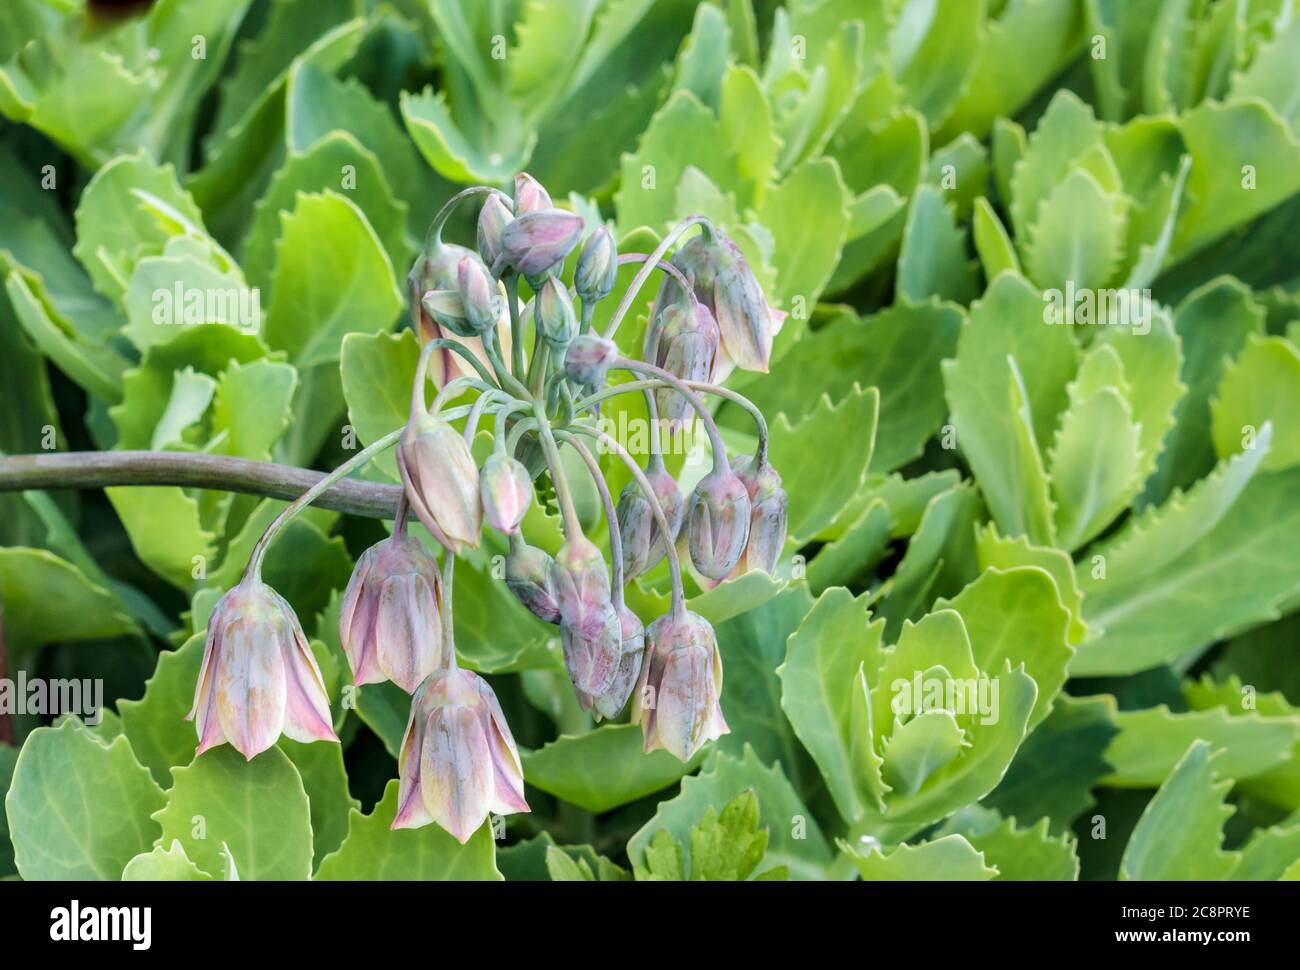 Eine nickende Gruppe von zarten violett-getönten, wachsartigen Nectaroscordum-Blüten überhängt das leuchtend grüne, robuste, saftige Laub des 'Autumn Joy'-Sedum. Stockfoto